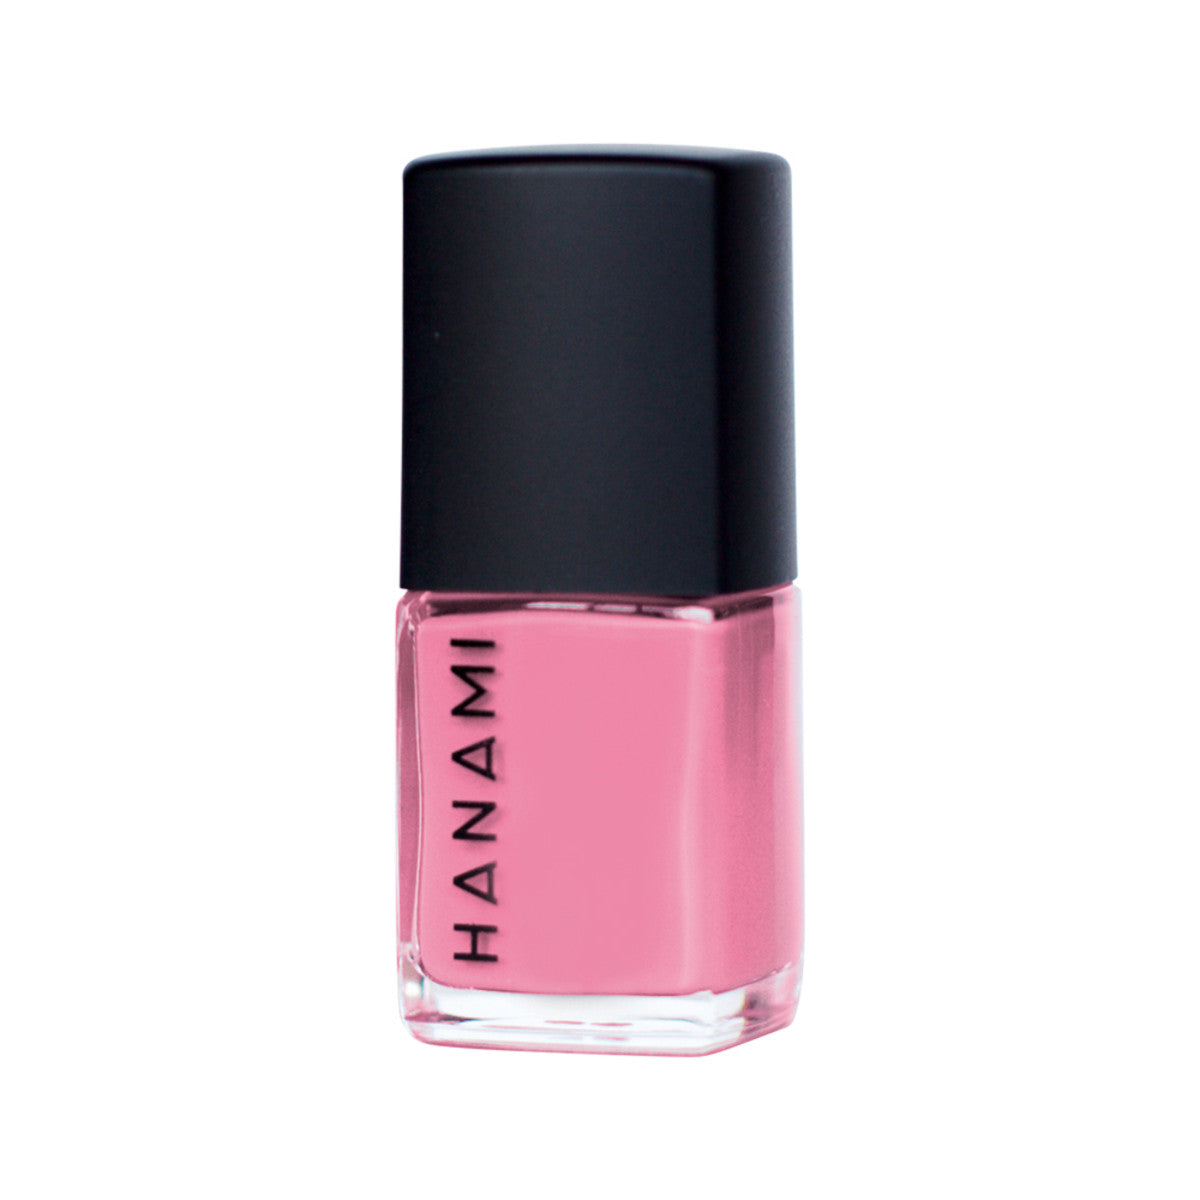 Hanami - Nail Polish Pink Moon 15ml